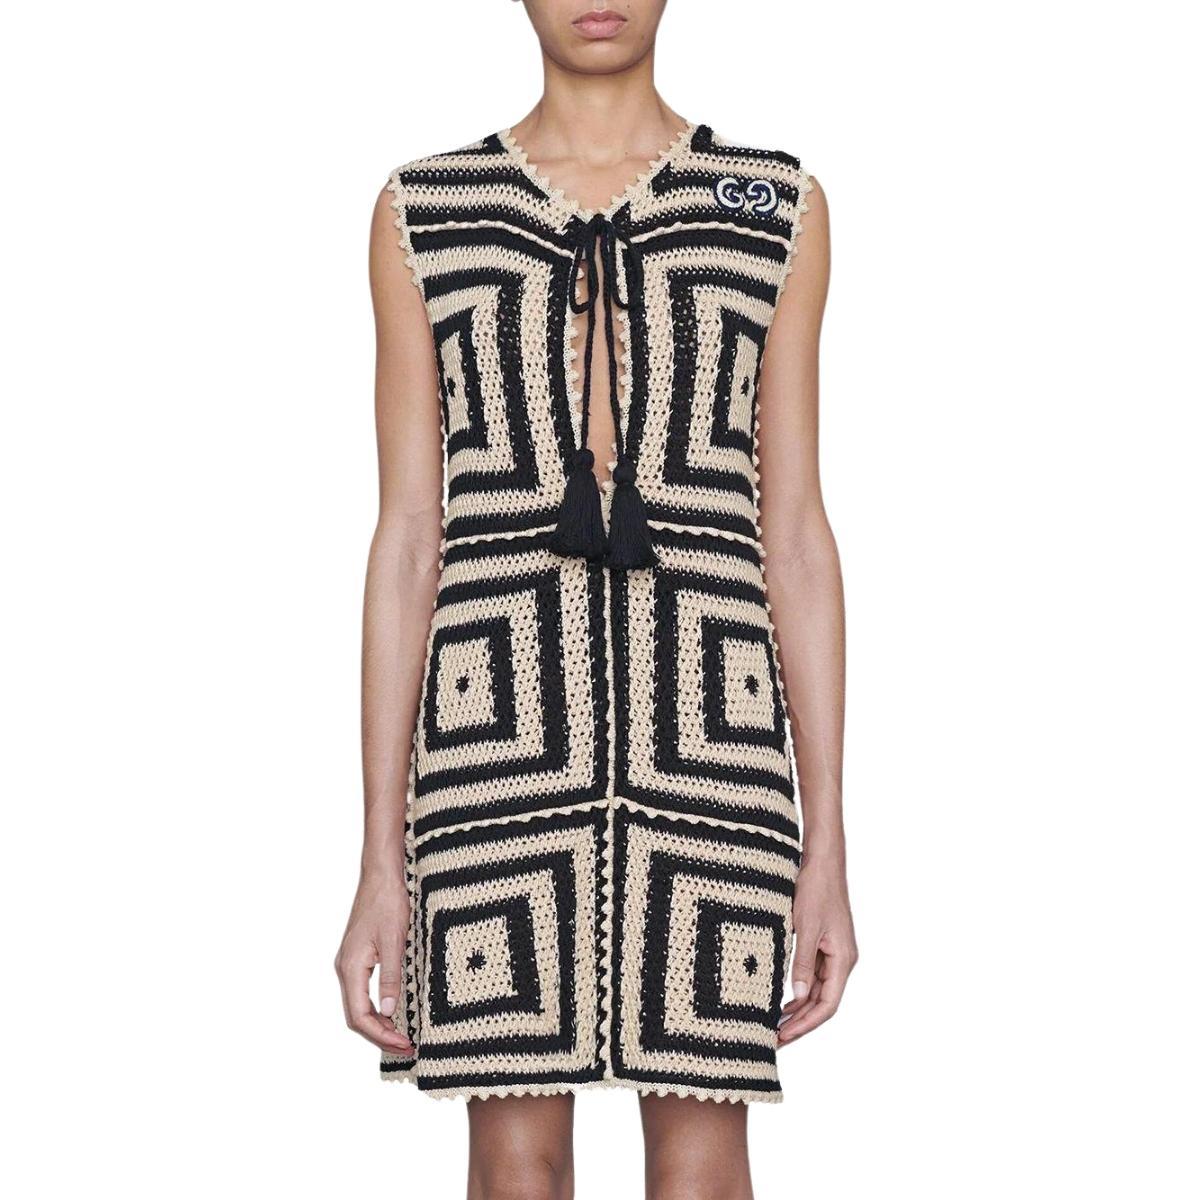 Dieses kurze Kleid aus beigefarbener und dunkelblauer Baumwolle mit Häkelmuster von Gucci präsentiert sich in einem Stil mit Intarsienmuster.
beige/dunkelblau
Gehäkeltes Design
Gemusterter